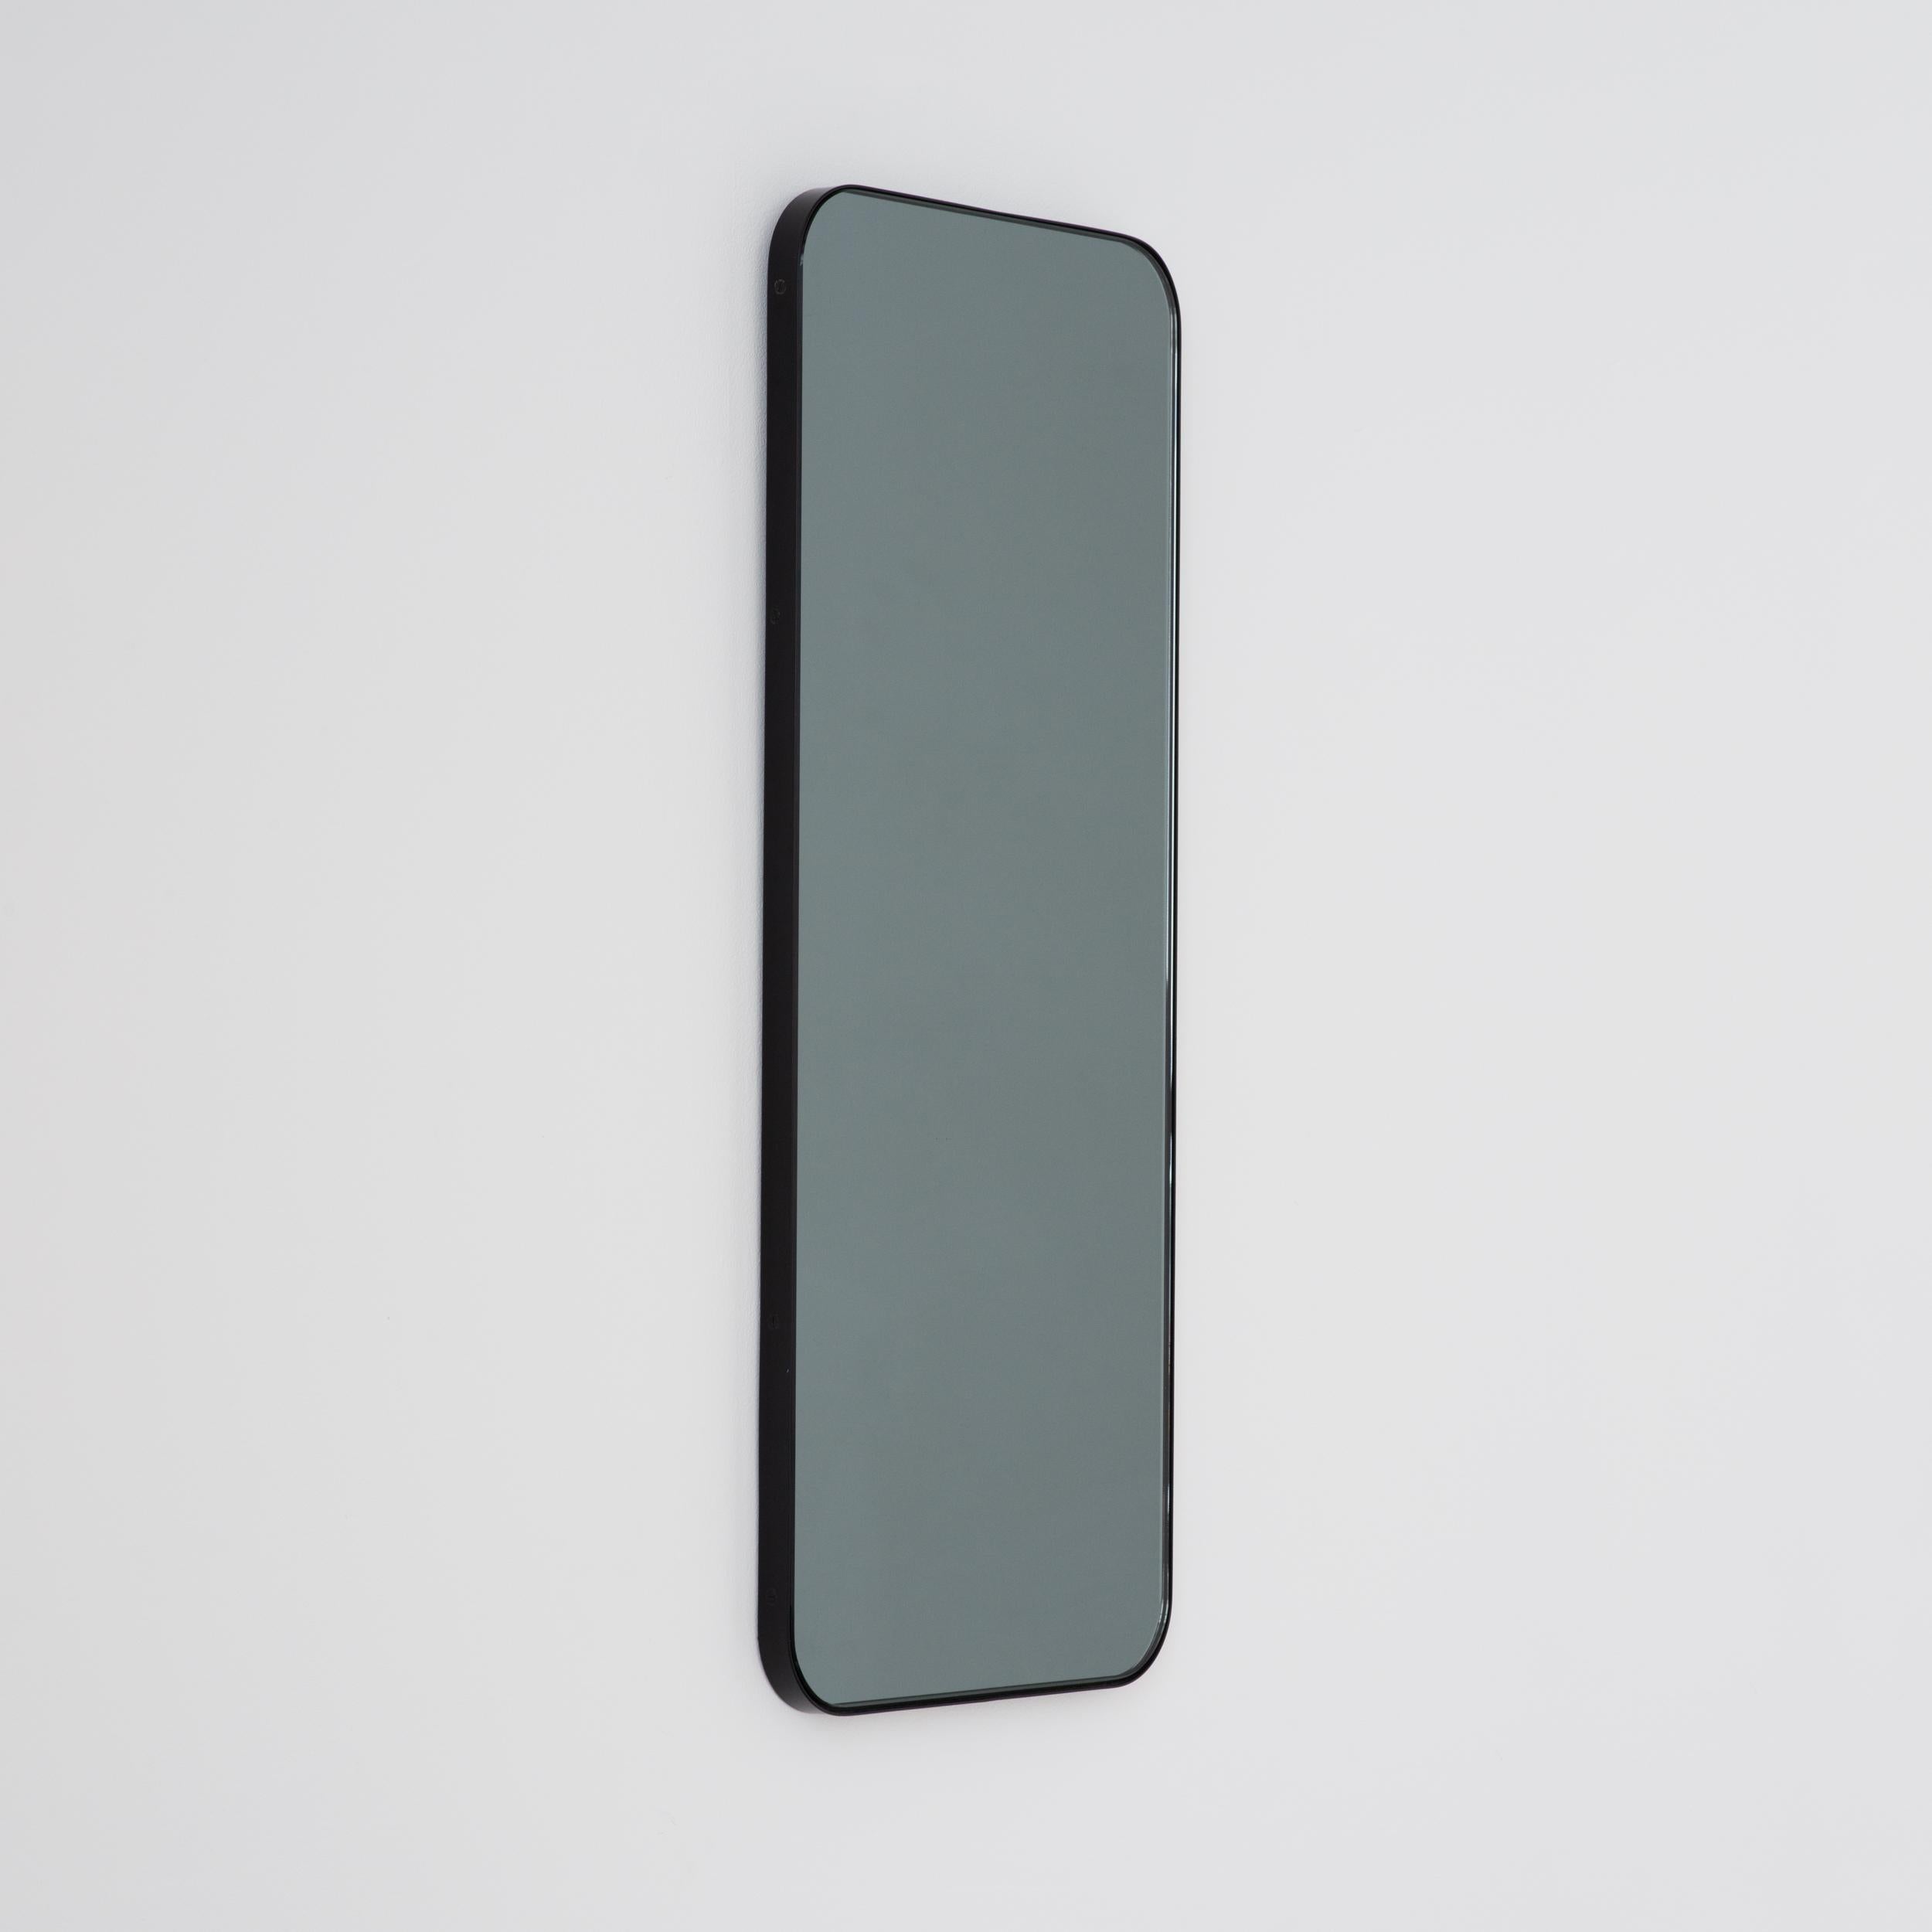 Poudré Quadris Black Tinted Rectangular Modern Mirror with a Black Frame, Small (miroir rectangulaire teinté noir avec cadre noir) en vente